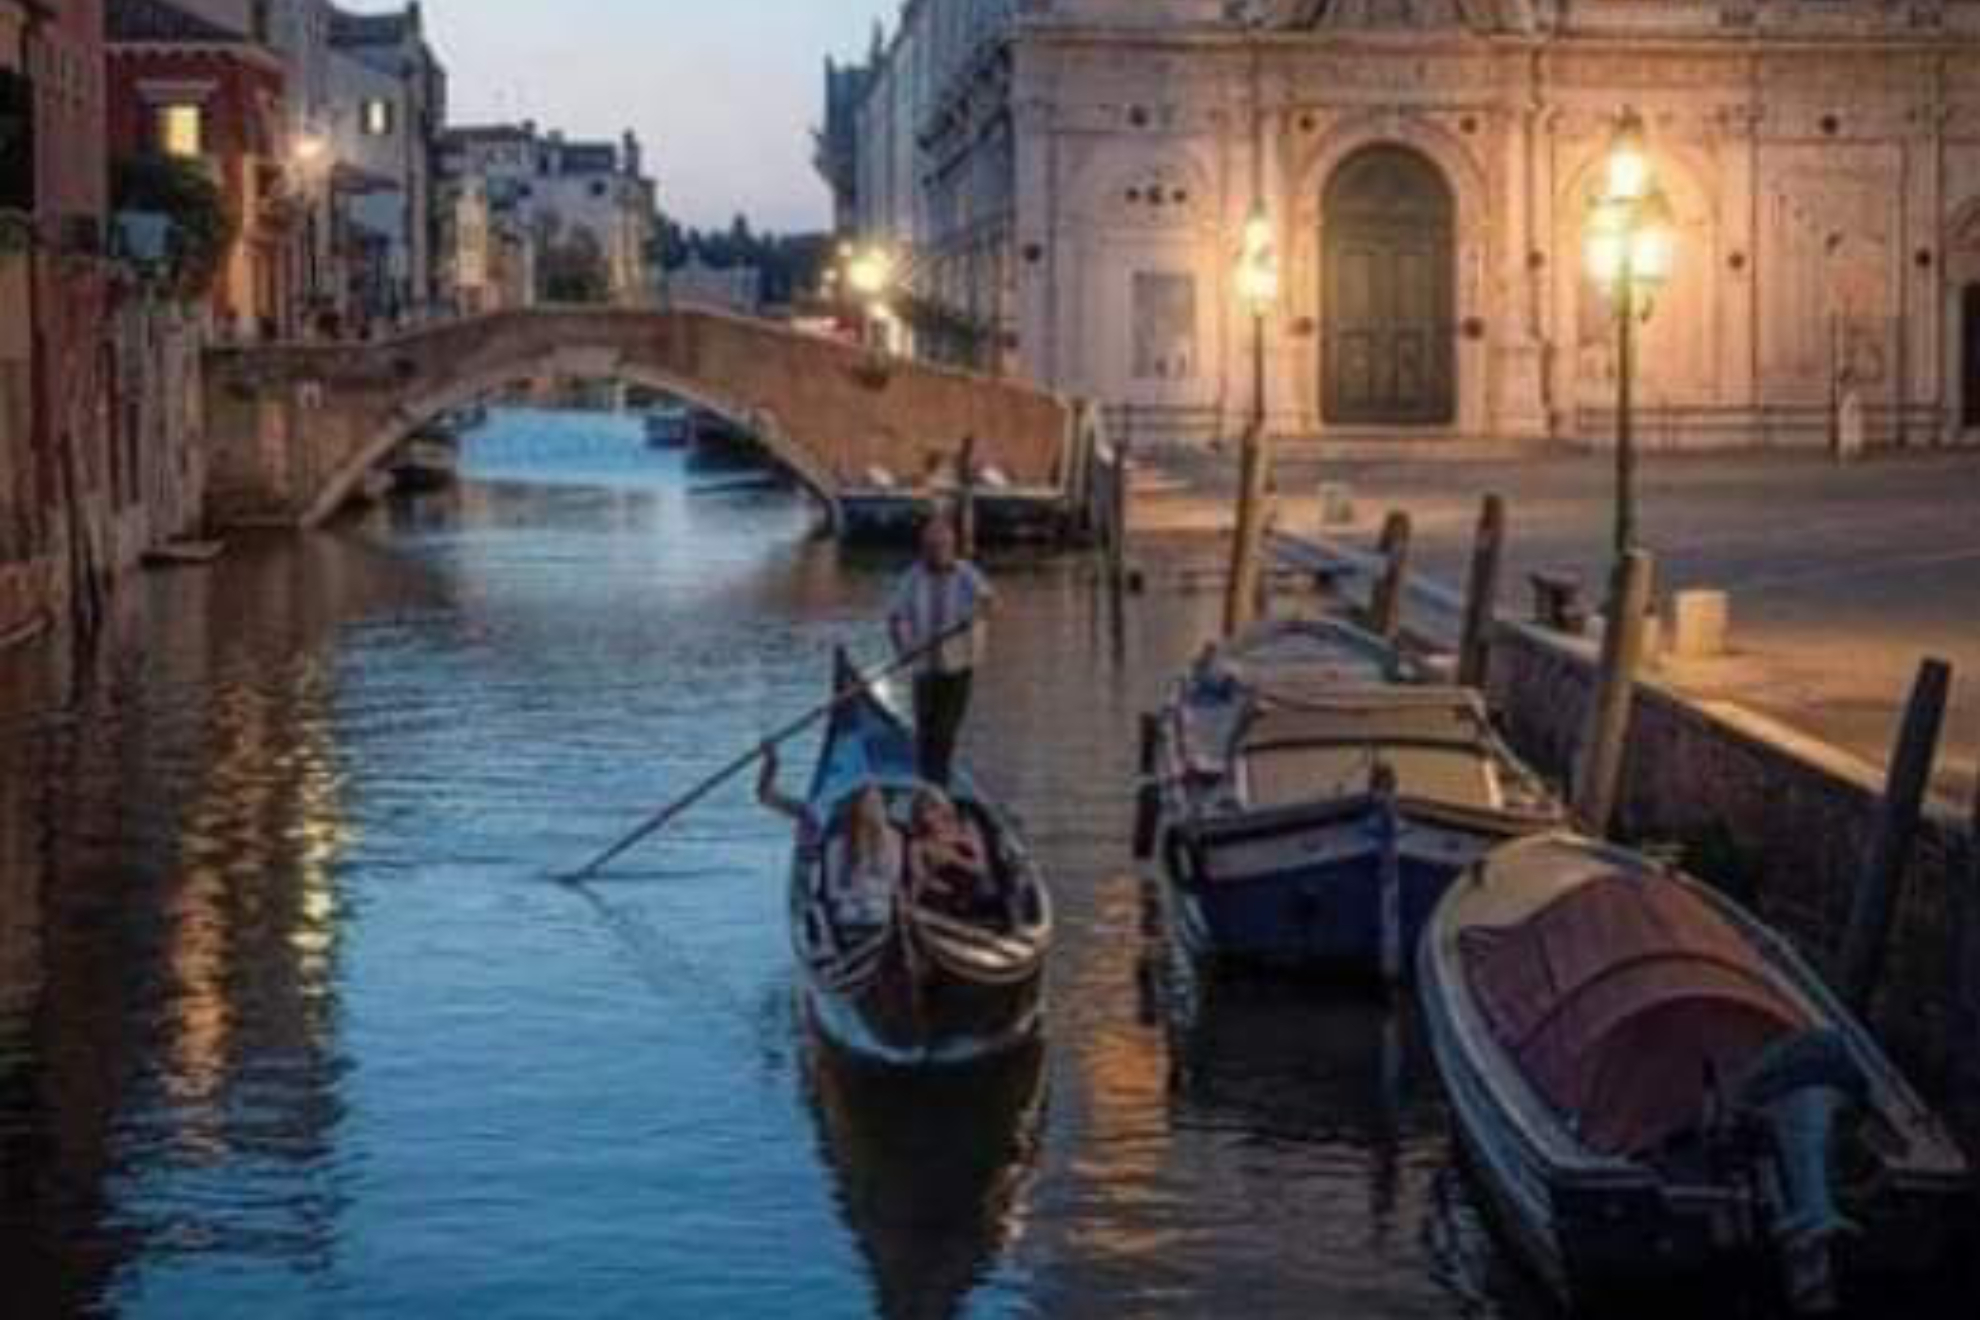 Venecia pasa a la histpria como la primer ciudad en el mundo en cobrar por visitarla